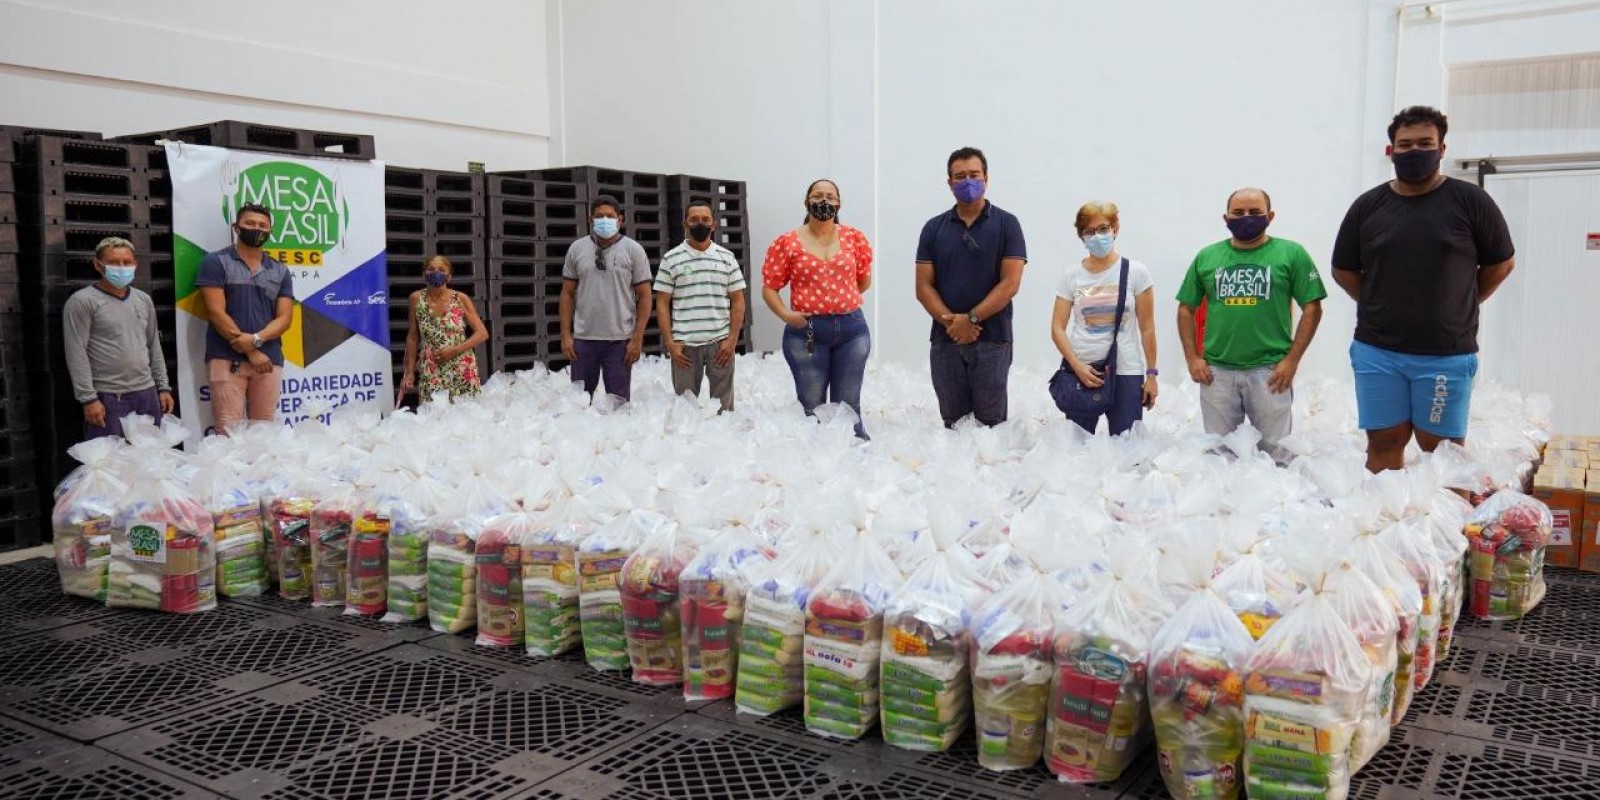 Repasses da campanha nacional Mesa Brasil Urgente são convertidos em 400 cestas básicas